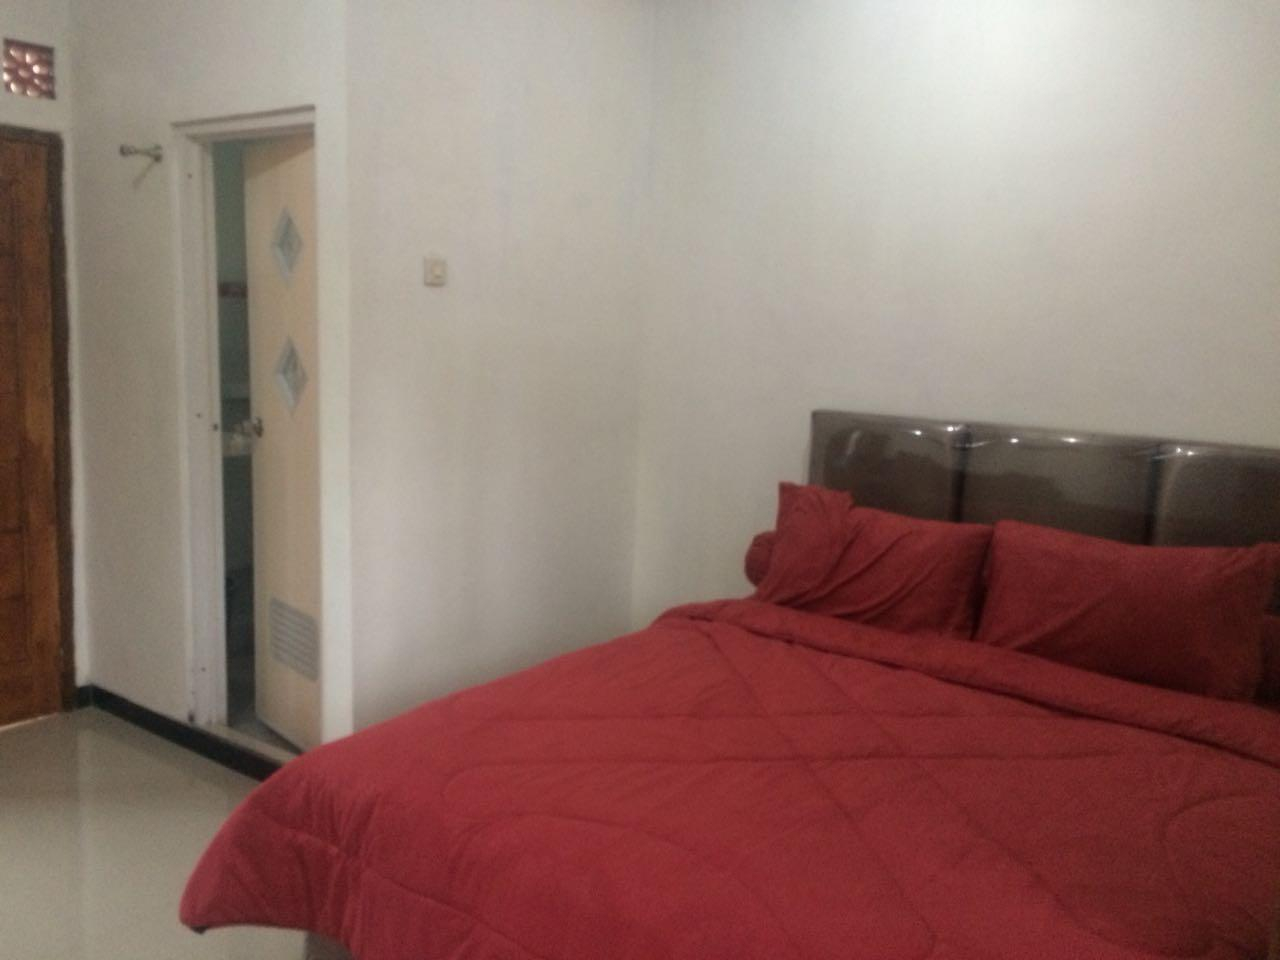 Bedroom 2, CASA BROMO HOMESTAY - PRIVATE ROOM 1, Probolinggo